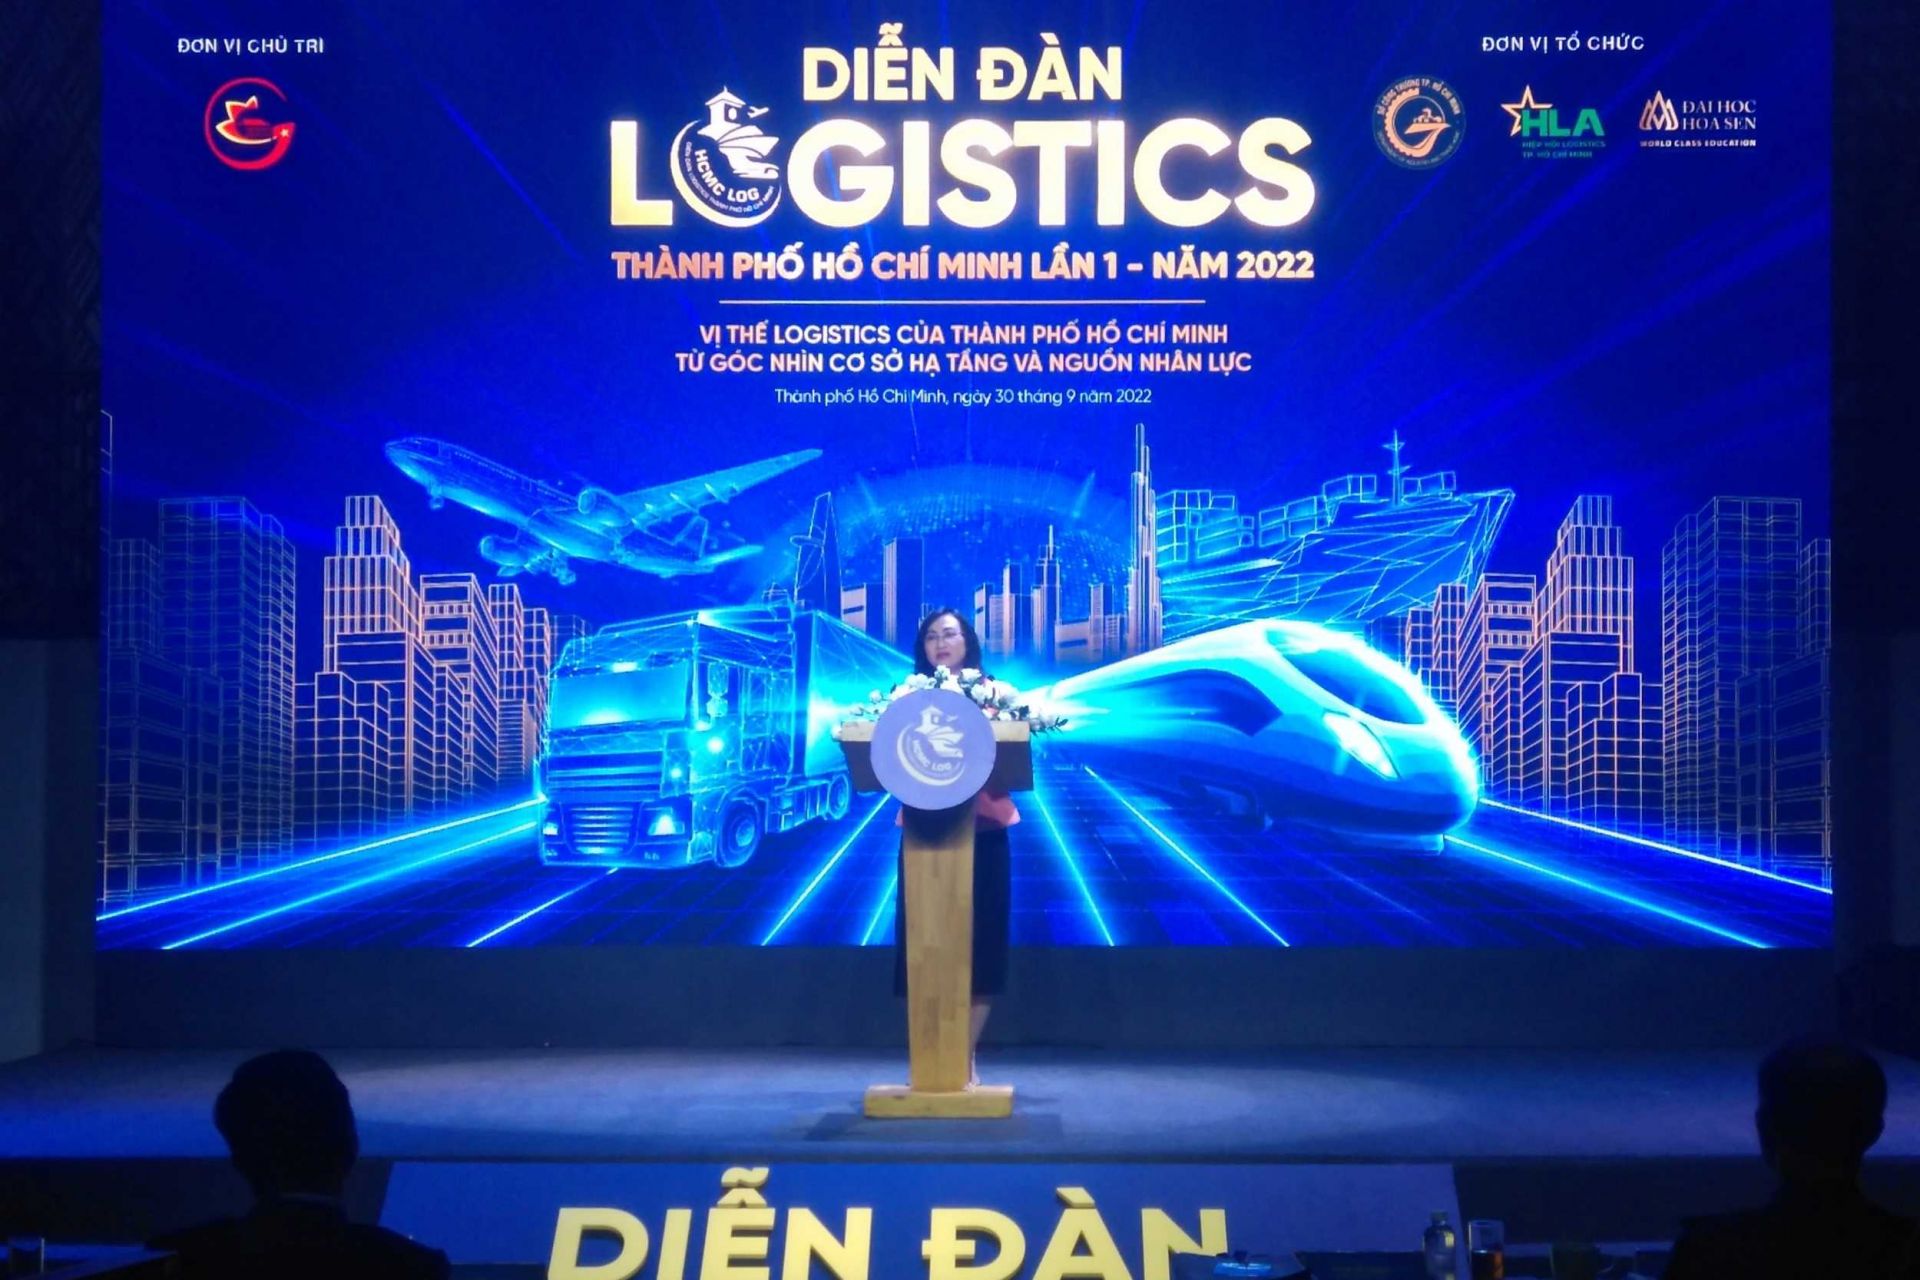 Bà Phan Thị Thắng - Phó Chủ tịch UBND TP. Hồ Chí Minh khẳng định logistics là một ngành rất quan trọng, có tác động đến sự phát triển bền vững, lâu dài cho tăng trưởng kinh tế Thành phố